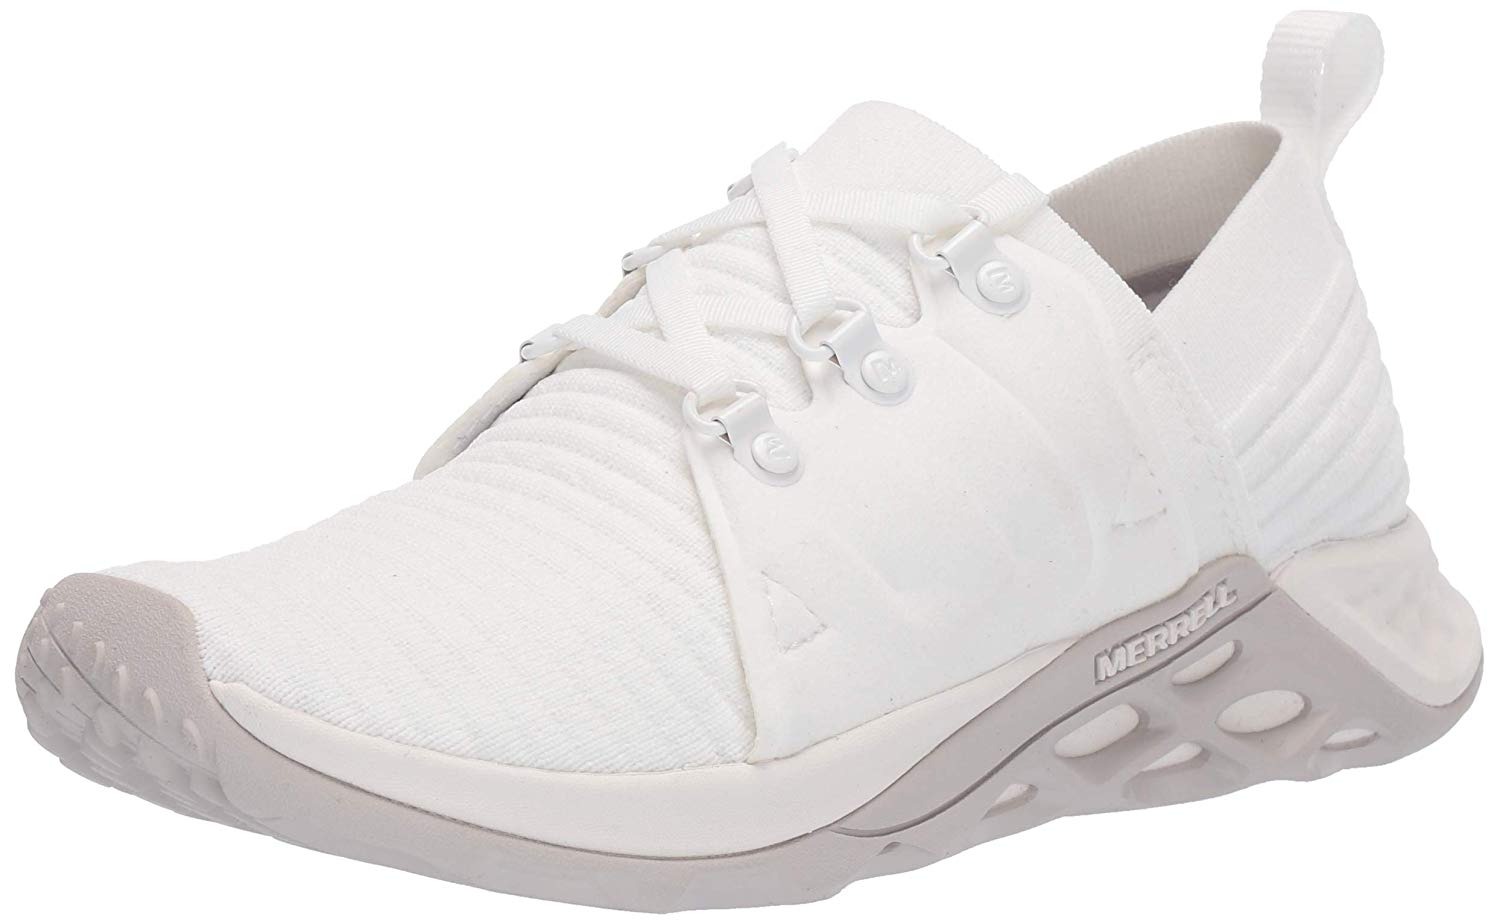 Merrell Women's Range Ac- Sneaker, White, Size 8.5 2HMu | eBay